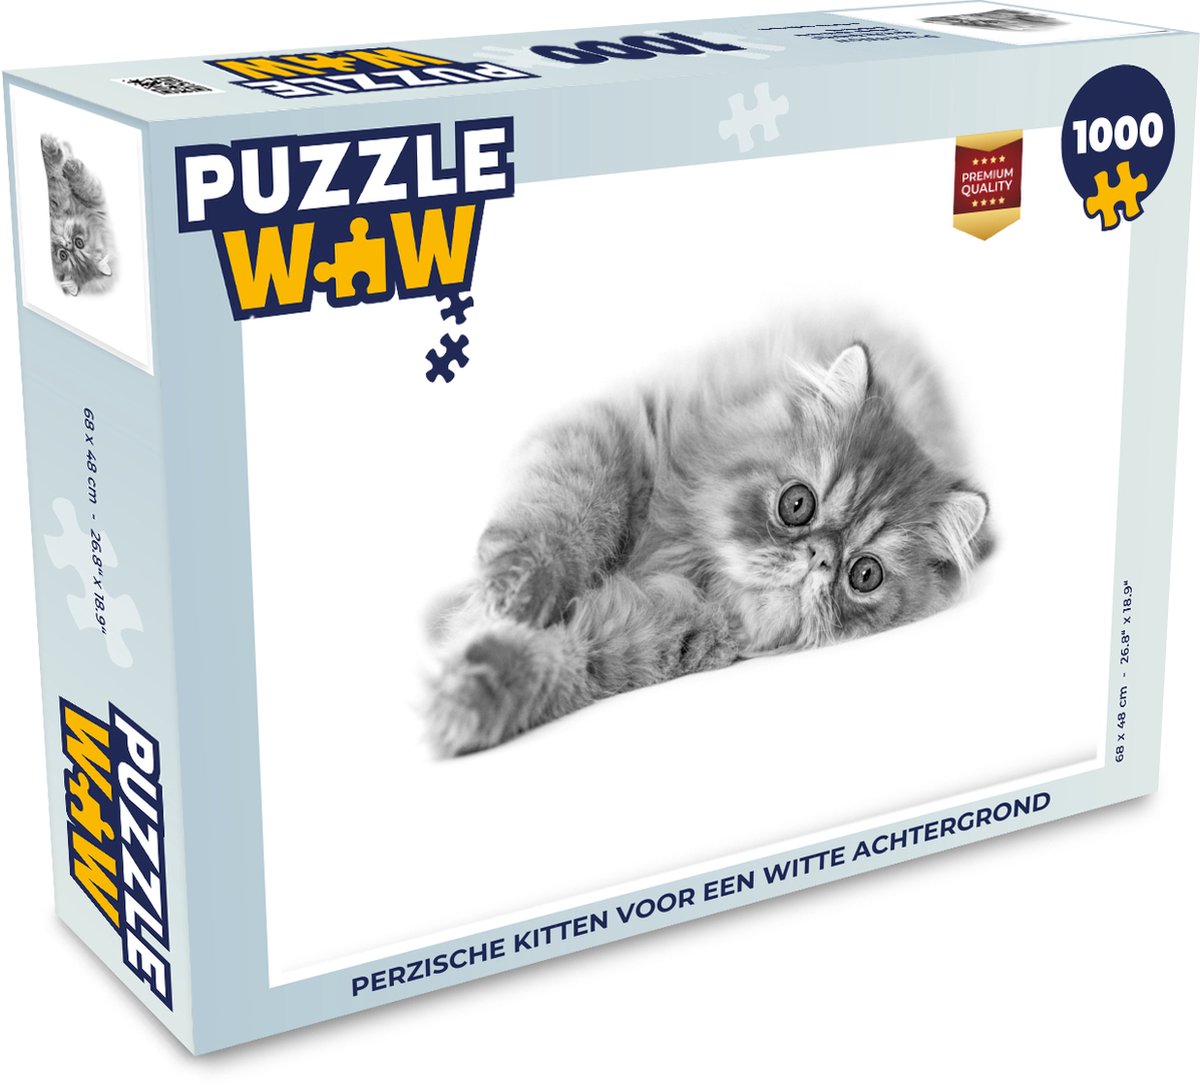 Afbeelding van product Puzzel 1000 stukjes volwassenen Pers 1000 stukjes - Perzische kitten voor een witte achtergrond - PuzzleWow heeft +100000 puzzels